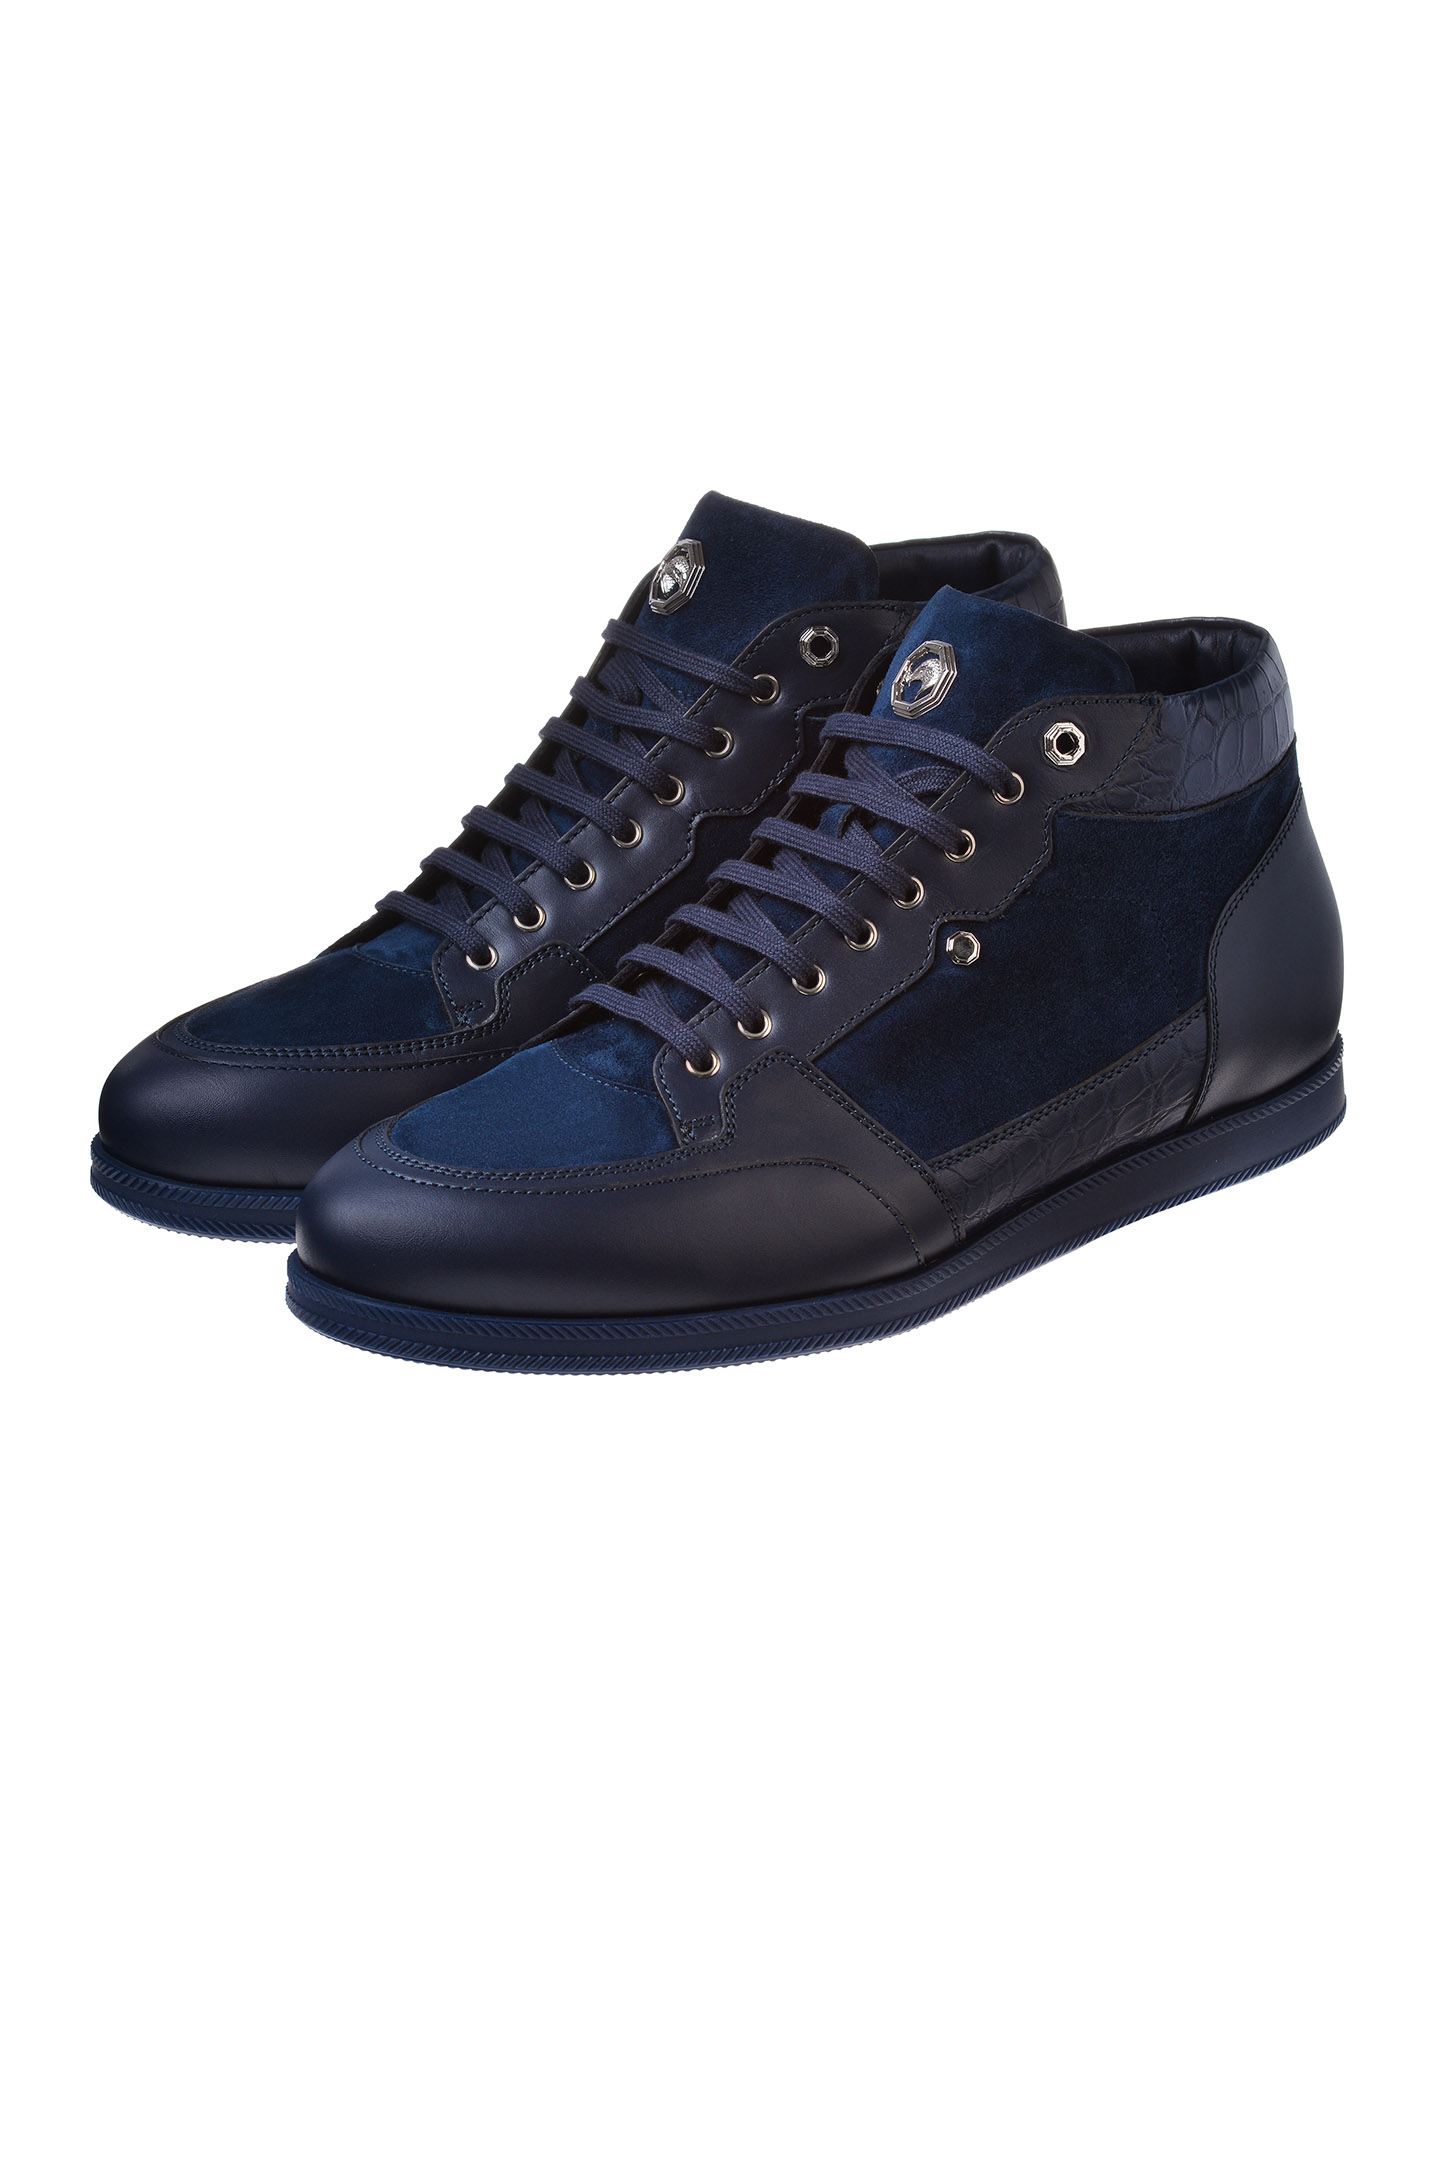 Ботинки STEFANO RICCI UF941G4096 WYSDCS, цвет: Синий, Мужской